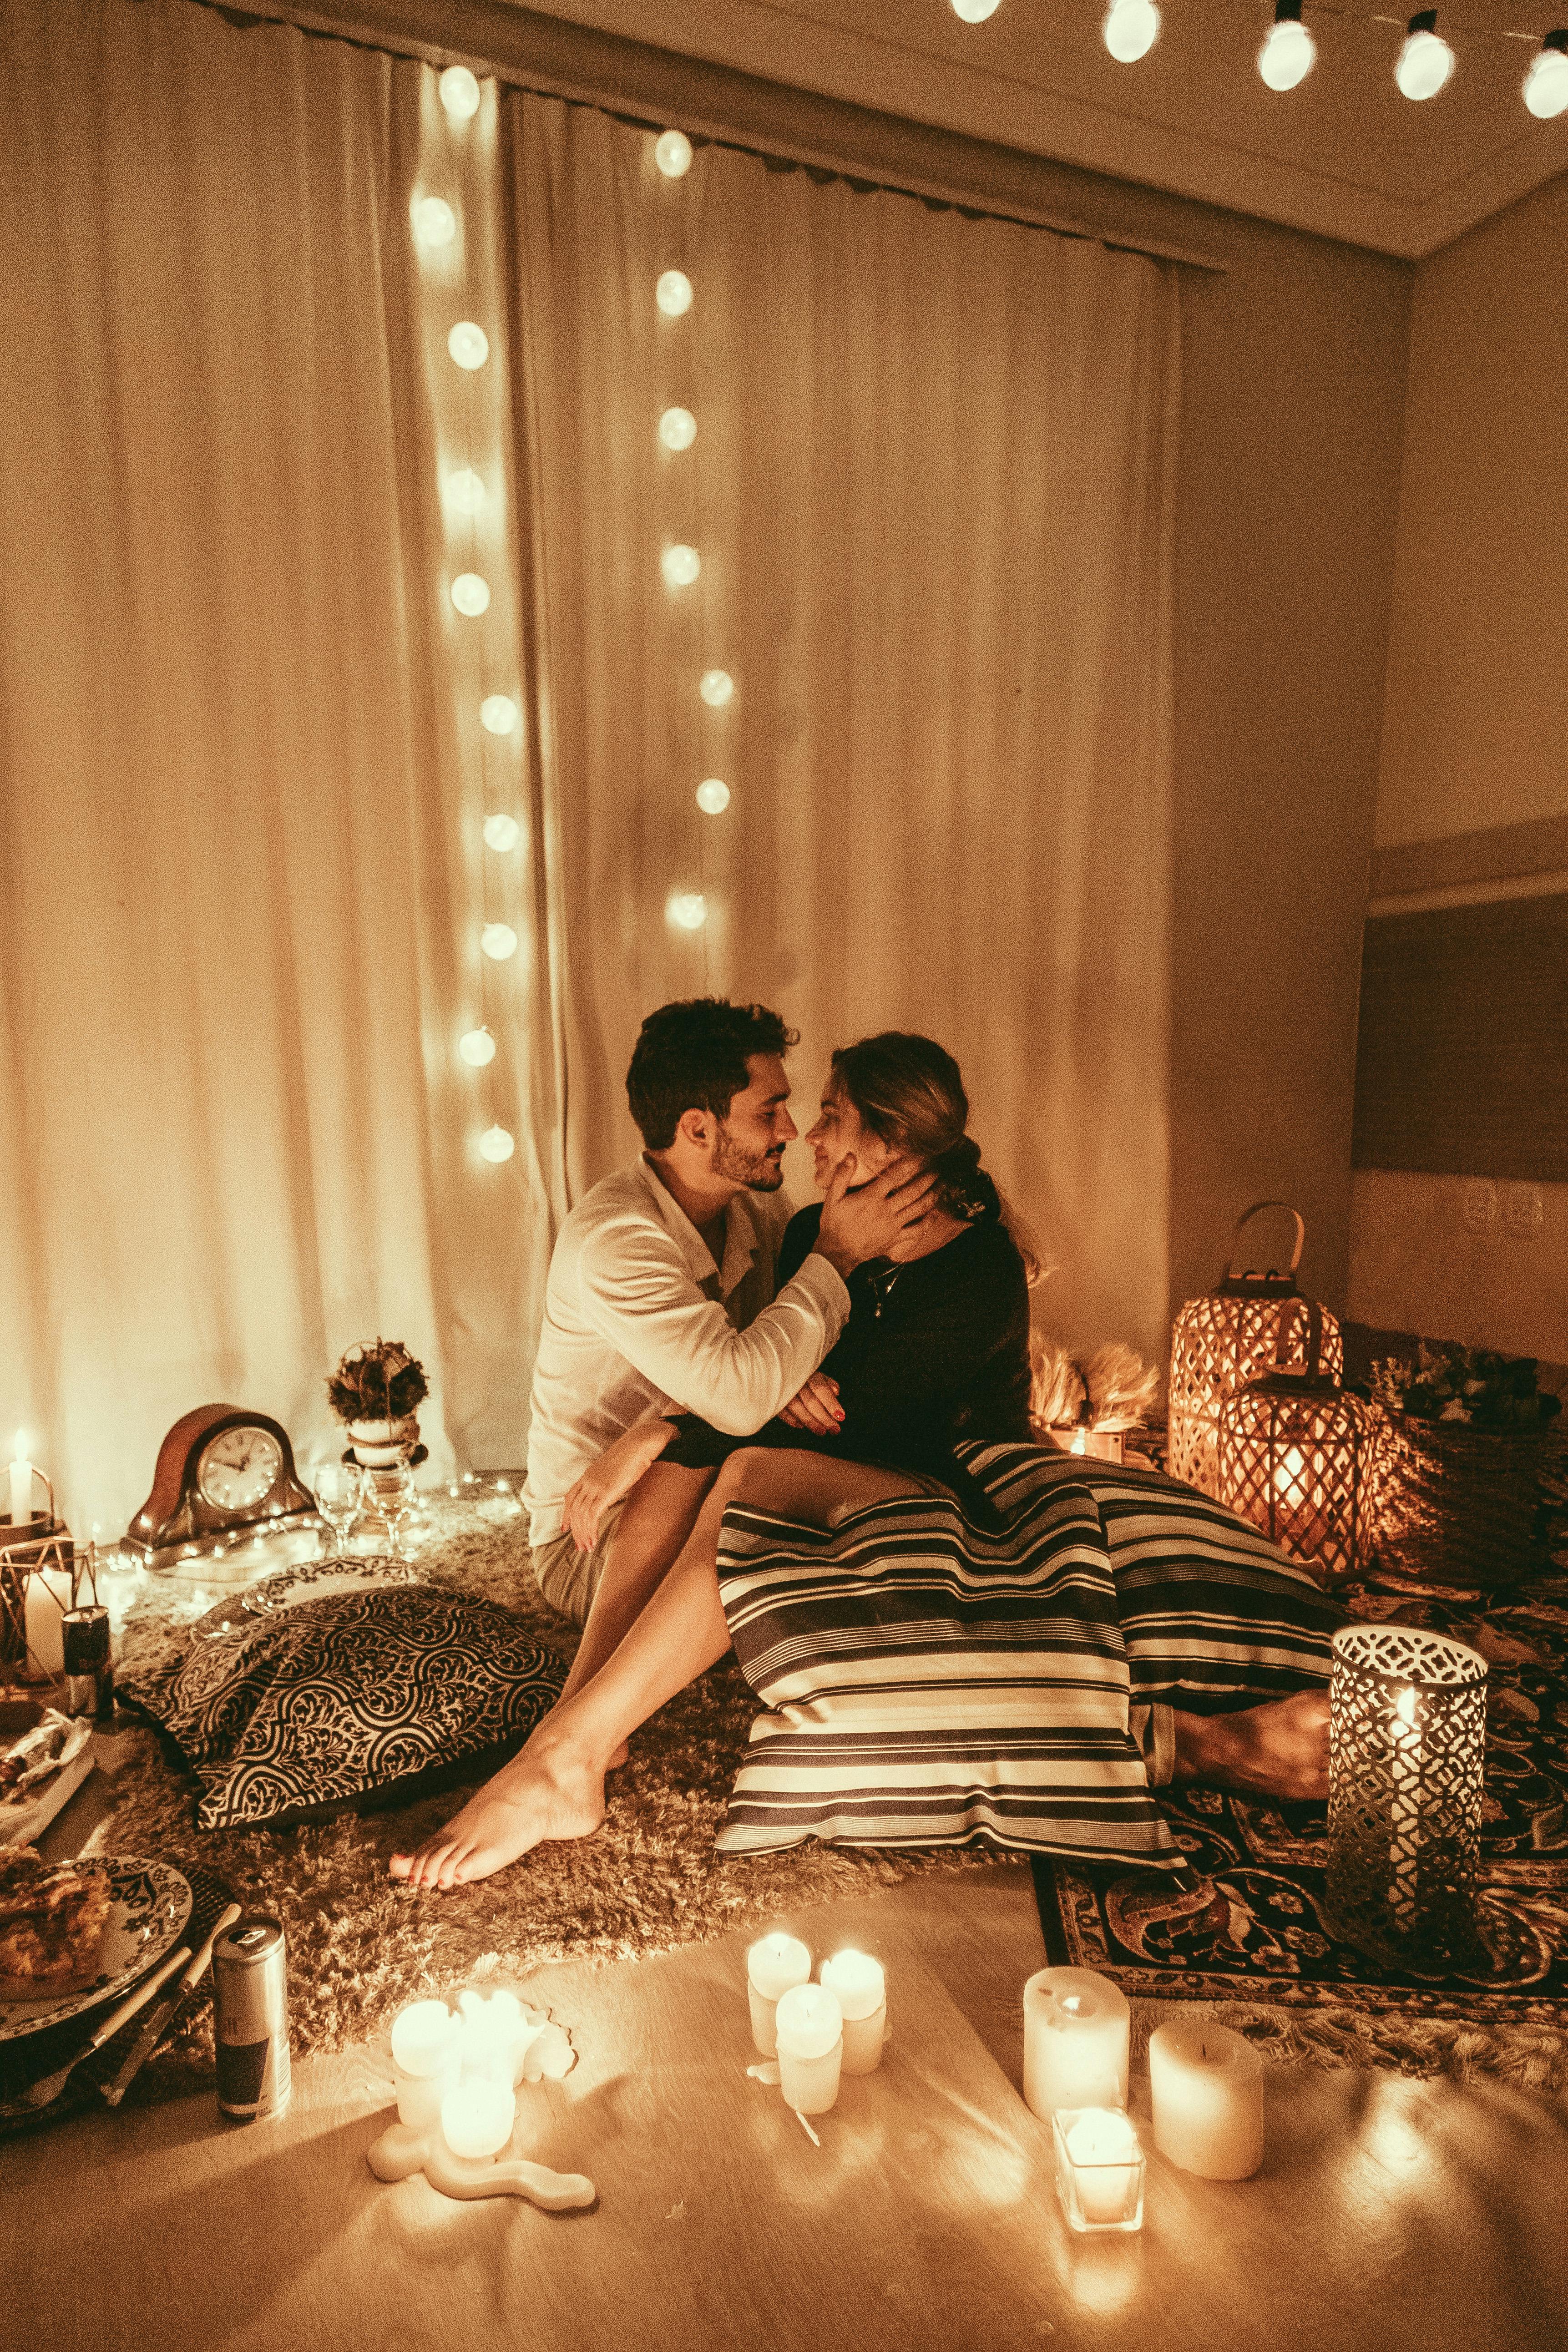 Un couple se lie autour d'un cadre romantique | Source : Pexels